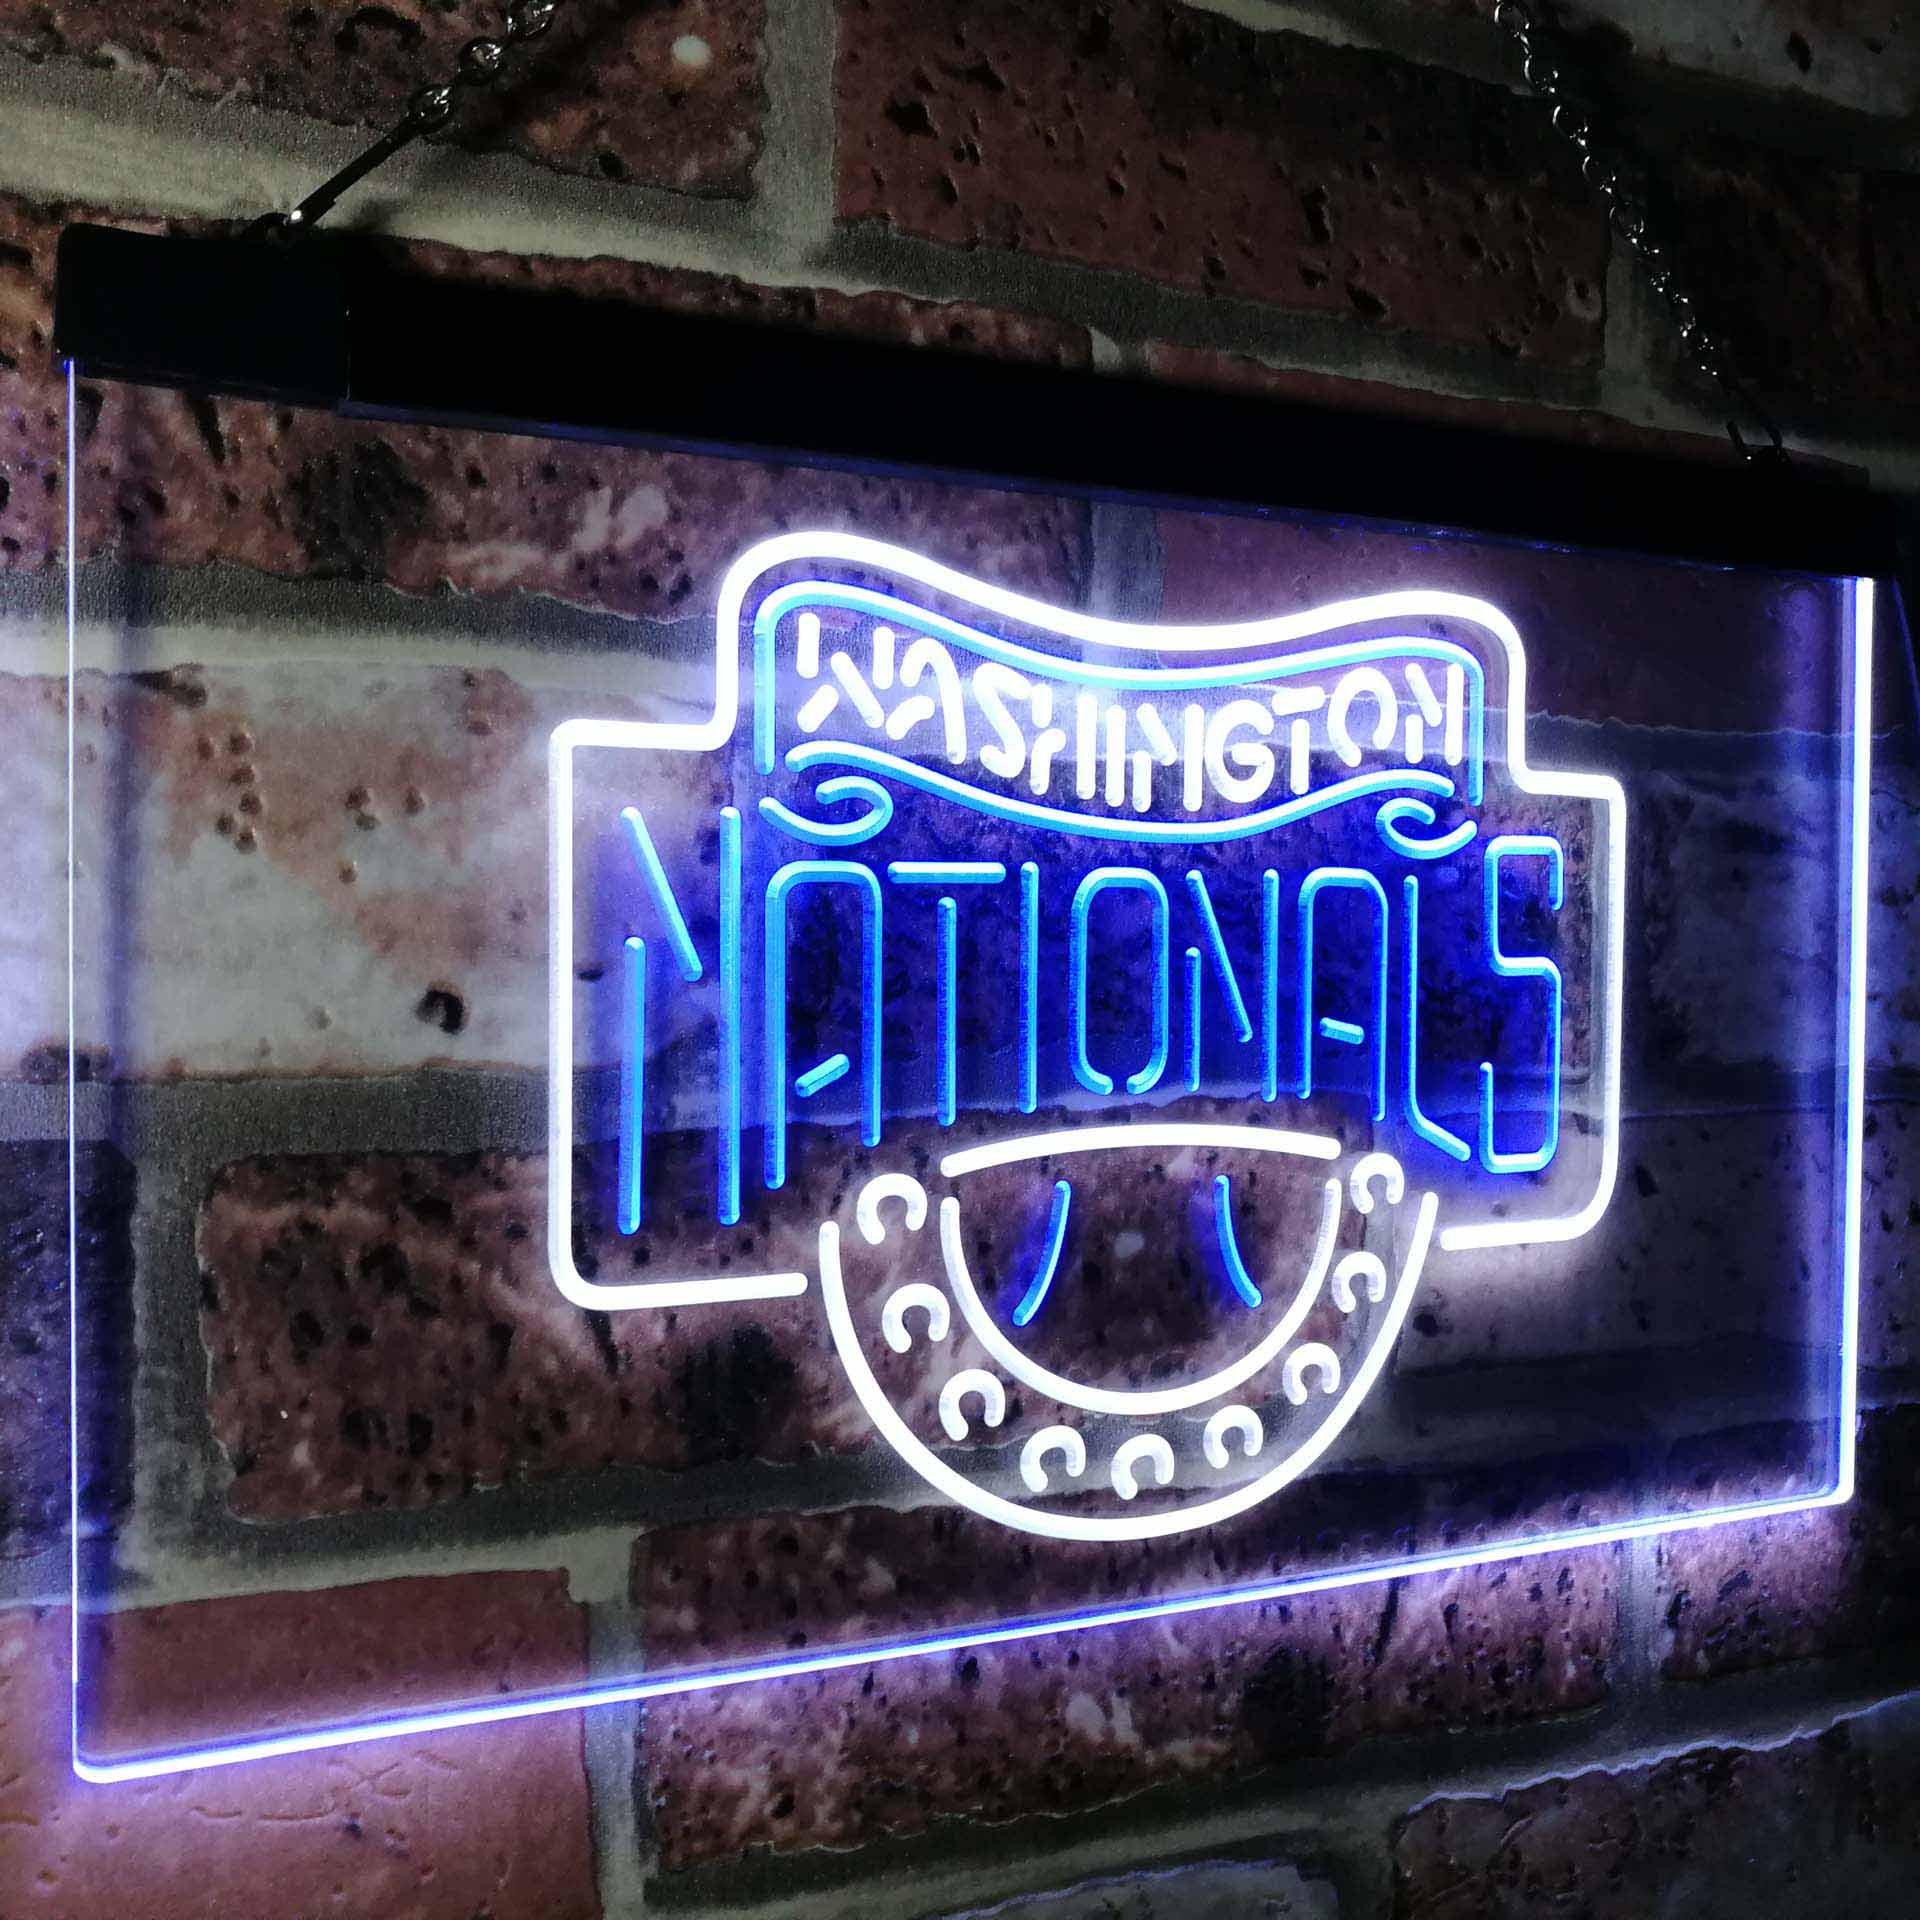 Washington Nationals Neon LED Sign